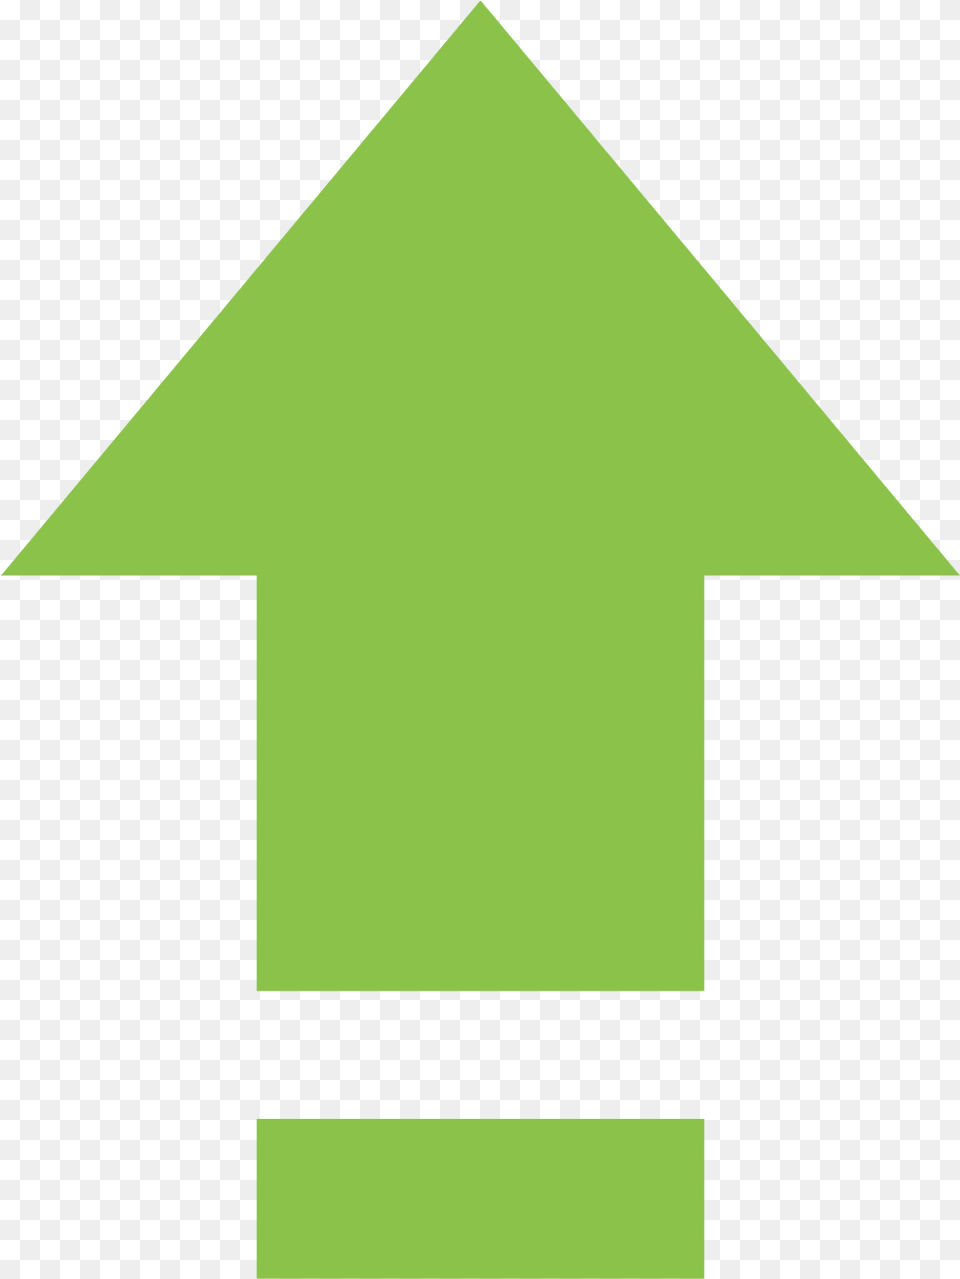 Vklyuchennij Caps Lock Icon, Green, Triangle Png Image